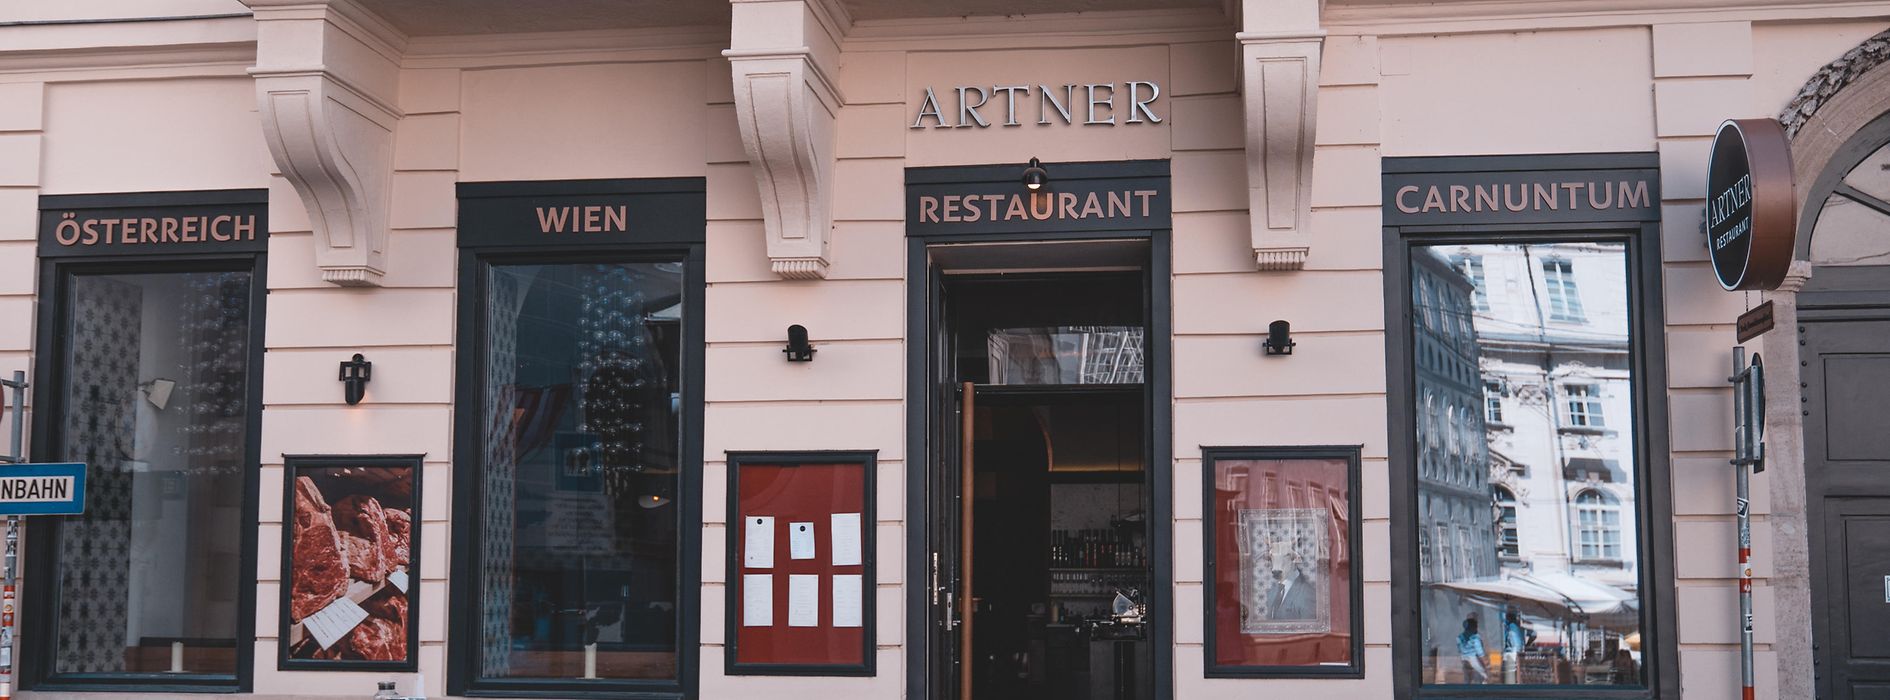 Restaurant Artner at Franziskanerplatz